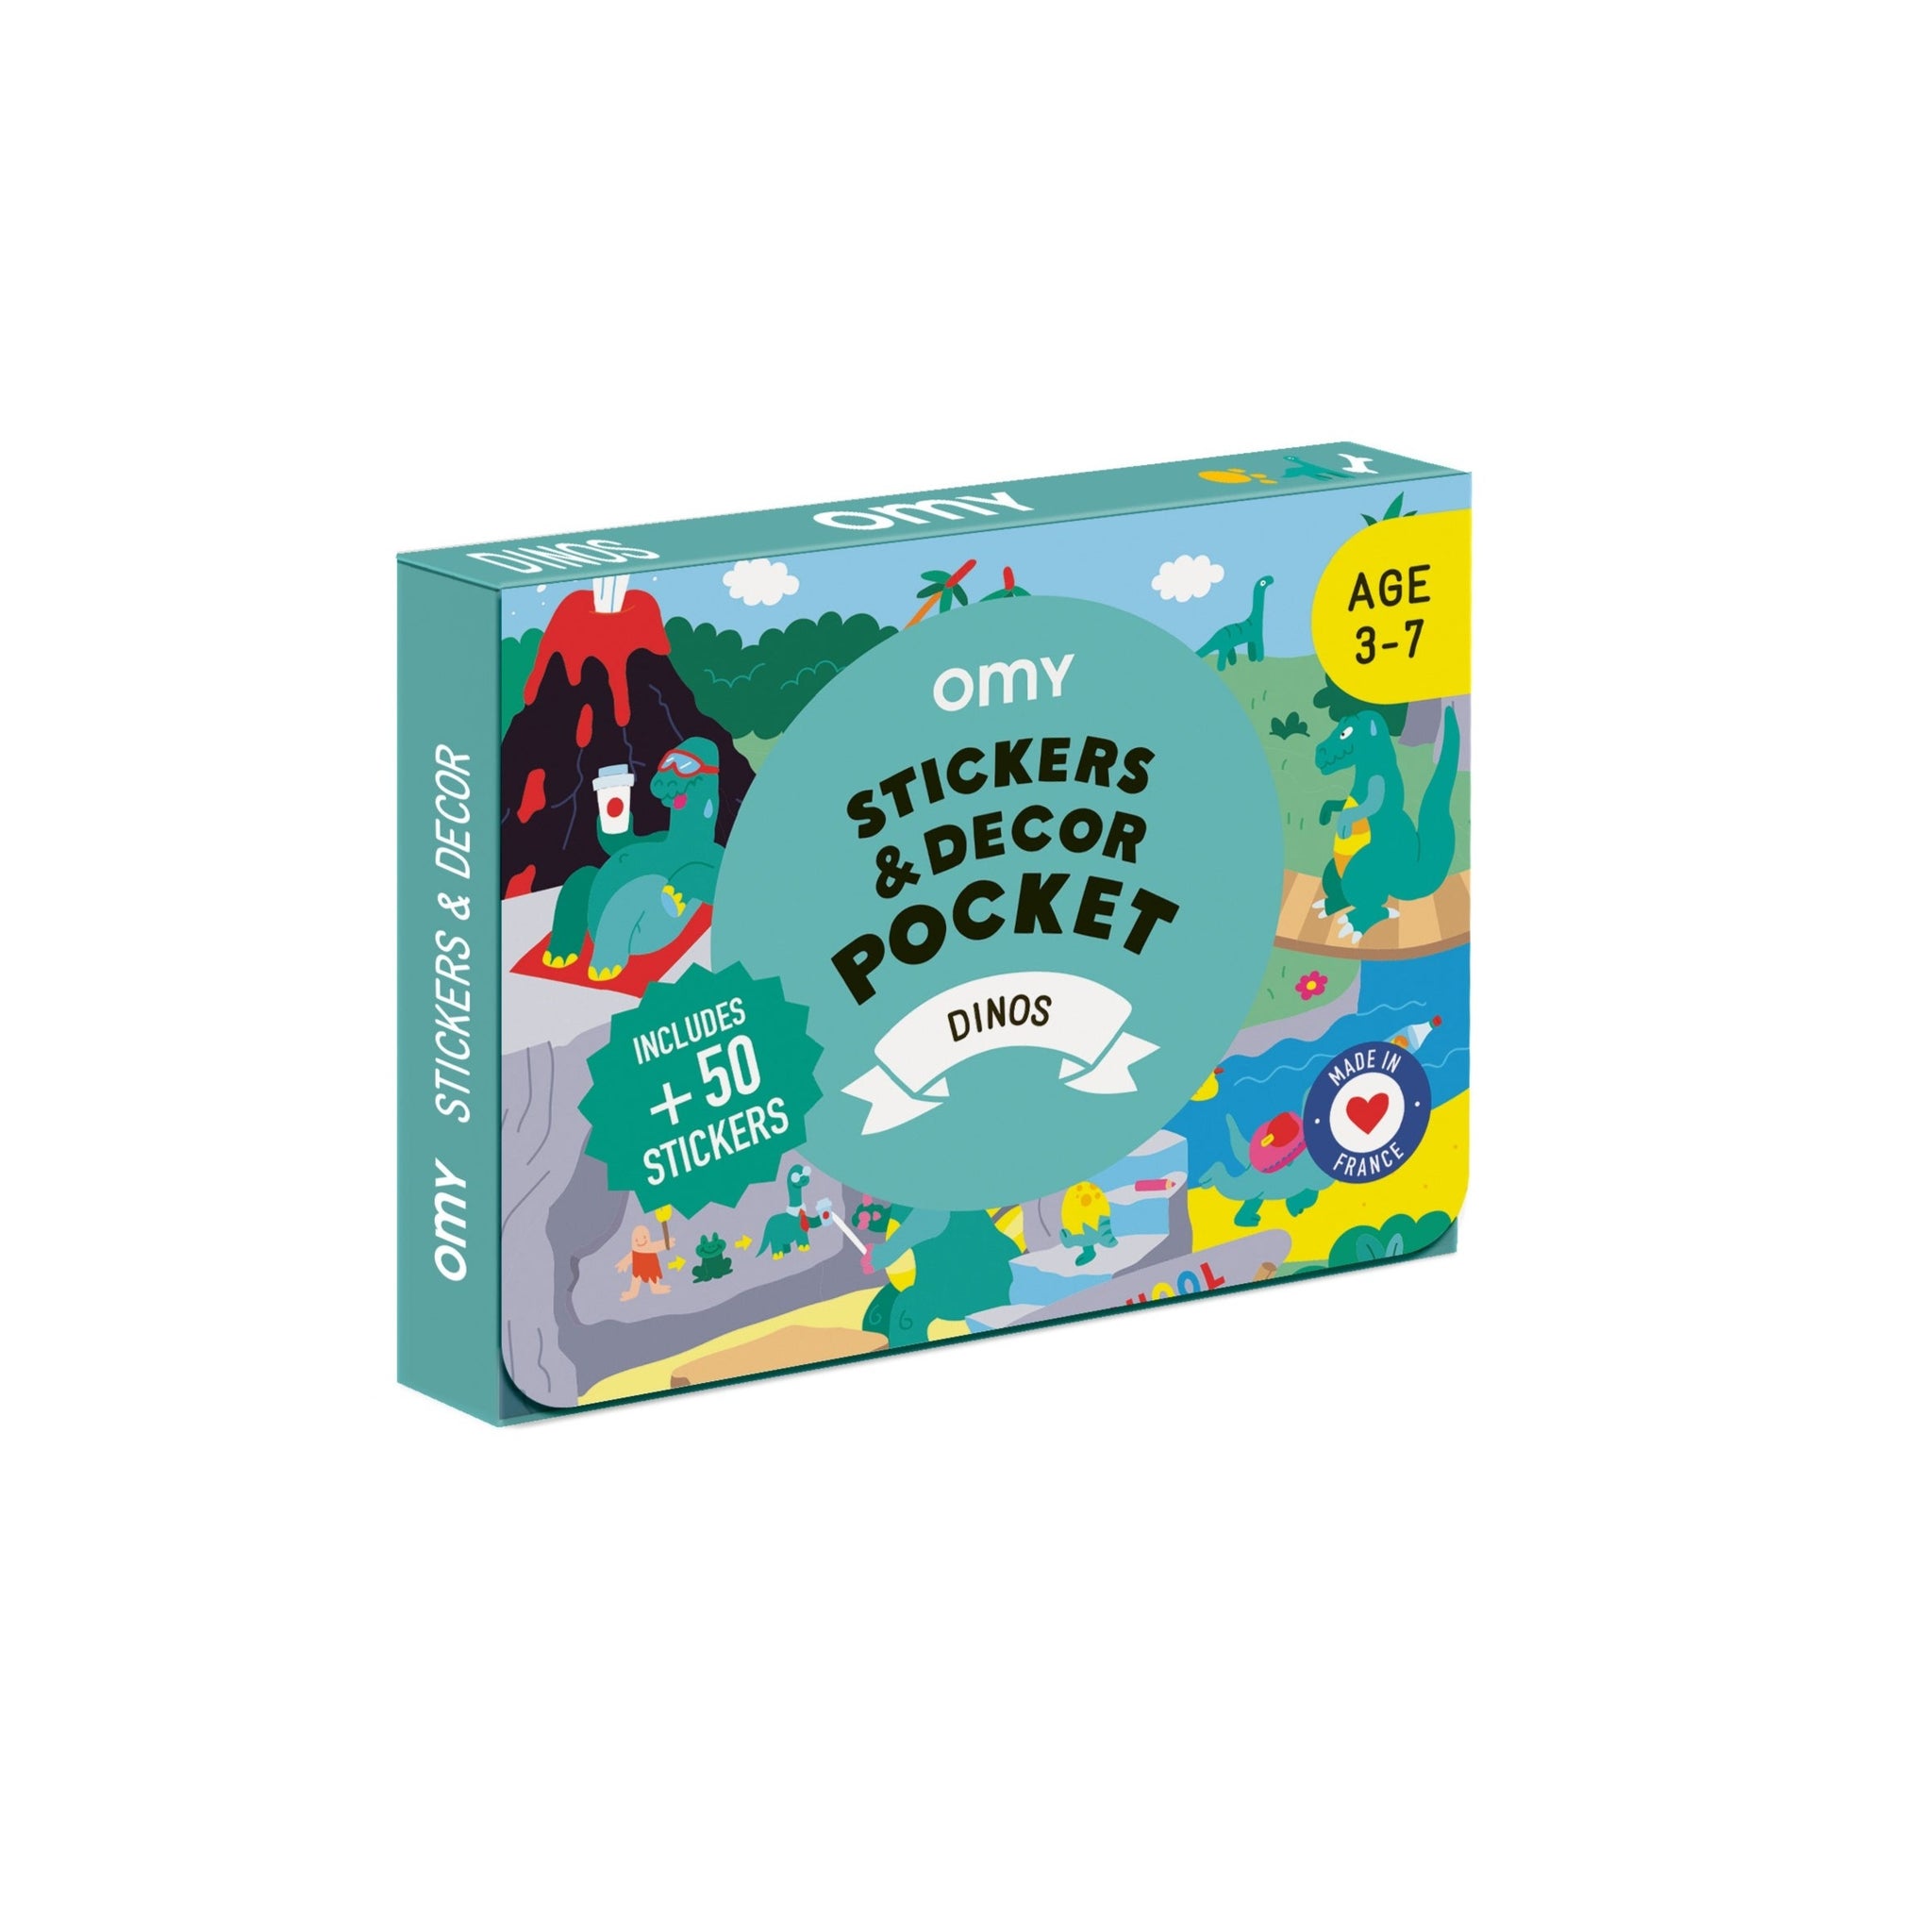 Dino Sticker Pocket - HoneyBug 